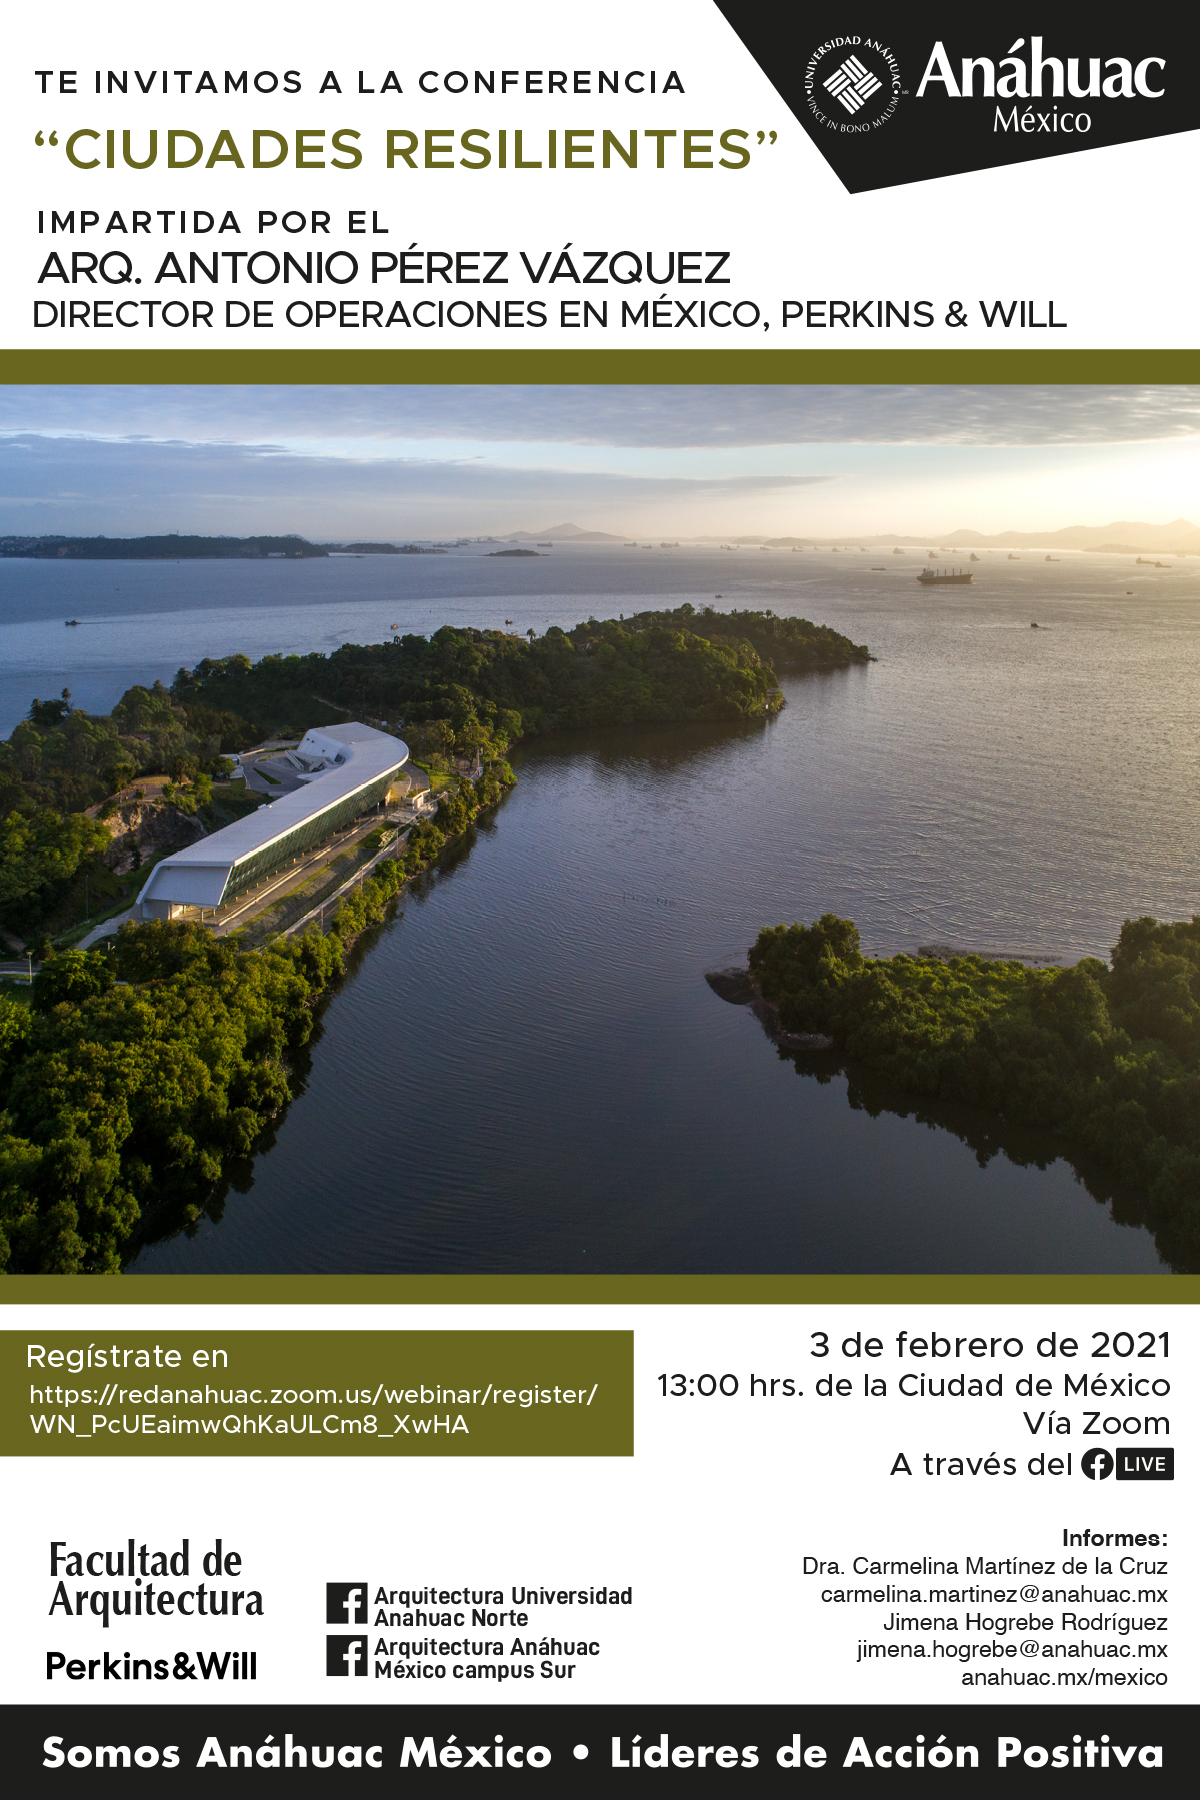 Ciclo de Conferencias de Arquitectura. Arq. Antonio Pérez Vázquez, Director de operaciones en México, Perkins & Will